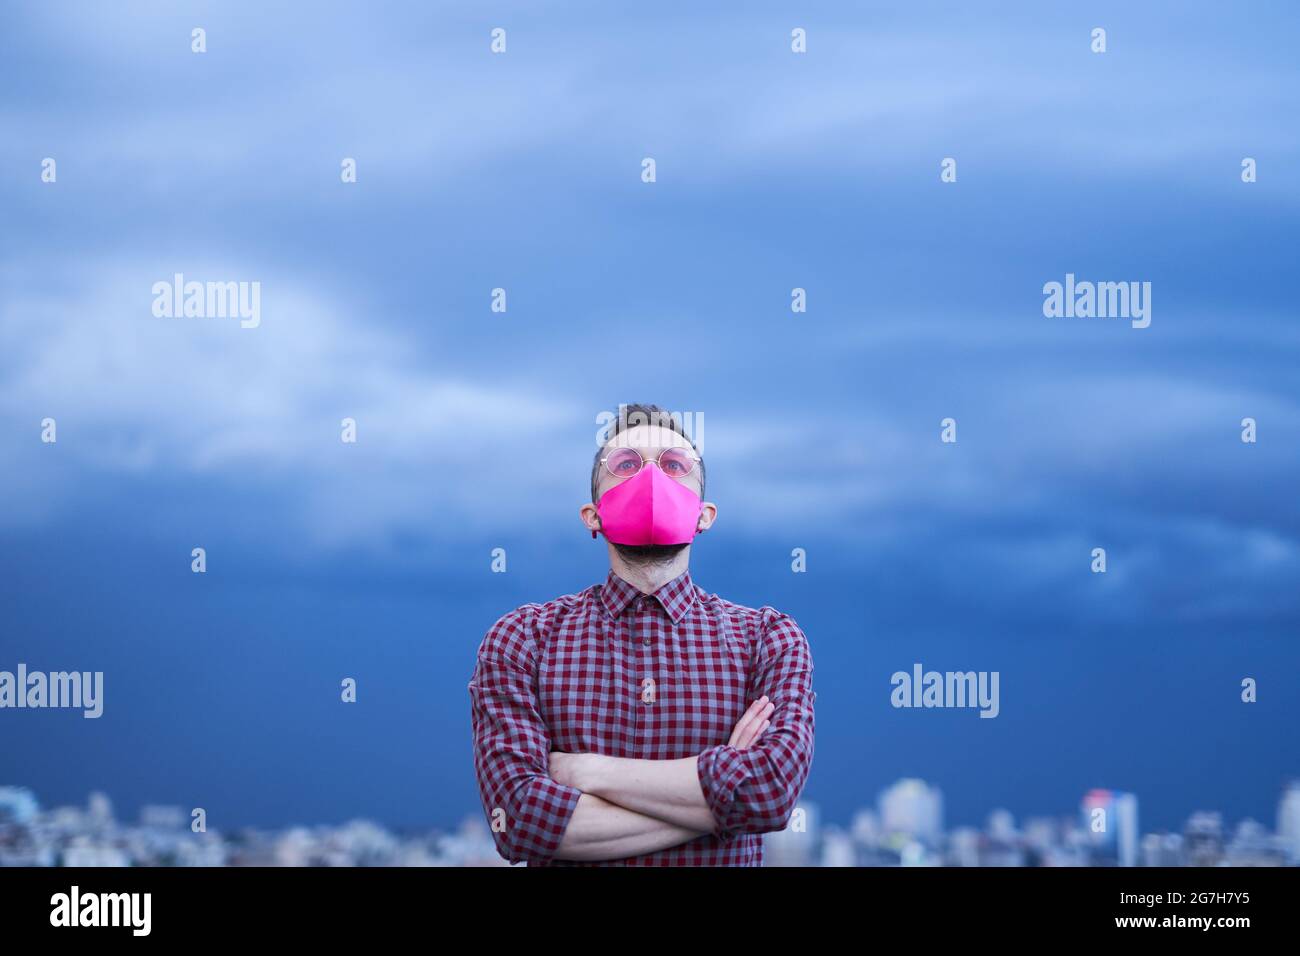 Konzept der Hoffnung, LGBTQ-Thema. Attraktive kaukasische Homosexuell in rosa schützende Gesichtsmaske und rosa Brillen Blick nach oben mit Hoffnung. Männliche Person Porträt mit regnerischem Wetter Hintergrund und städtische Skyline Stockfoto